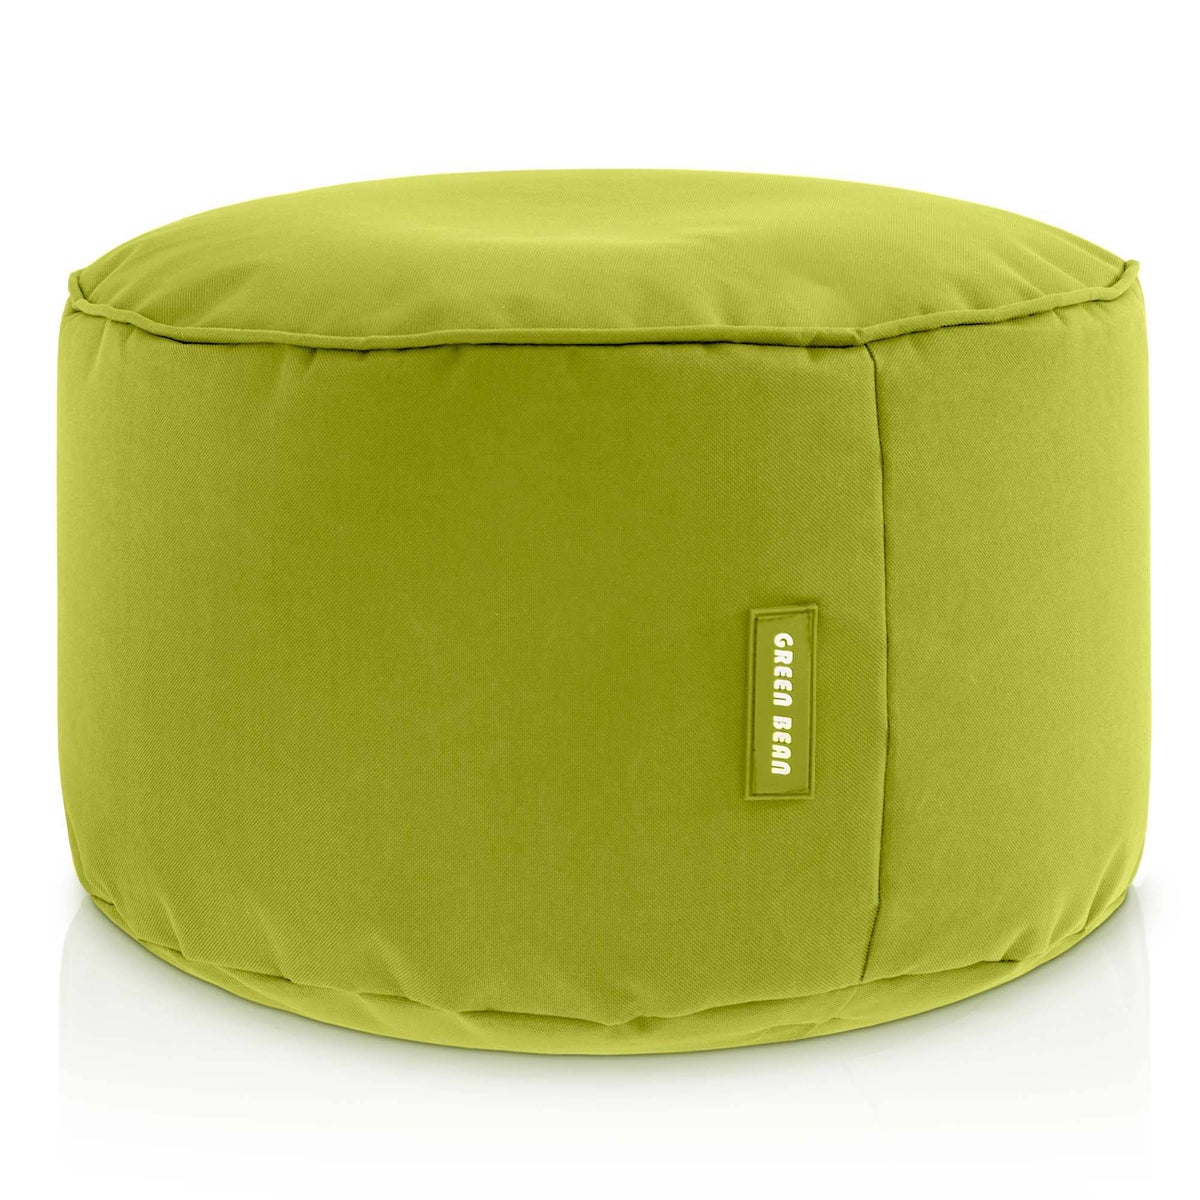 Green Bean© Sitzsack-Hocker 45x25cm mit EPS-Perlen Füllung - Fußhocker Fußkissen Sitz-Pouf für Sitzsäcke - Bodenkissen für Kinder und Erwachsene - Fußablage Sitzkissen Sitzhocker Grün